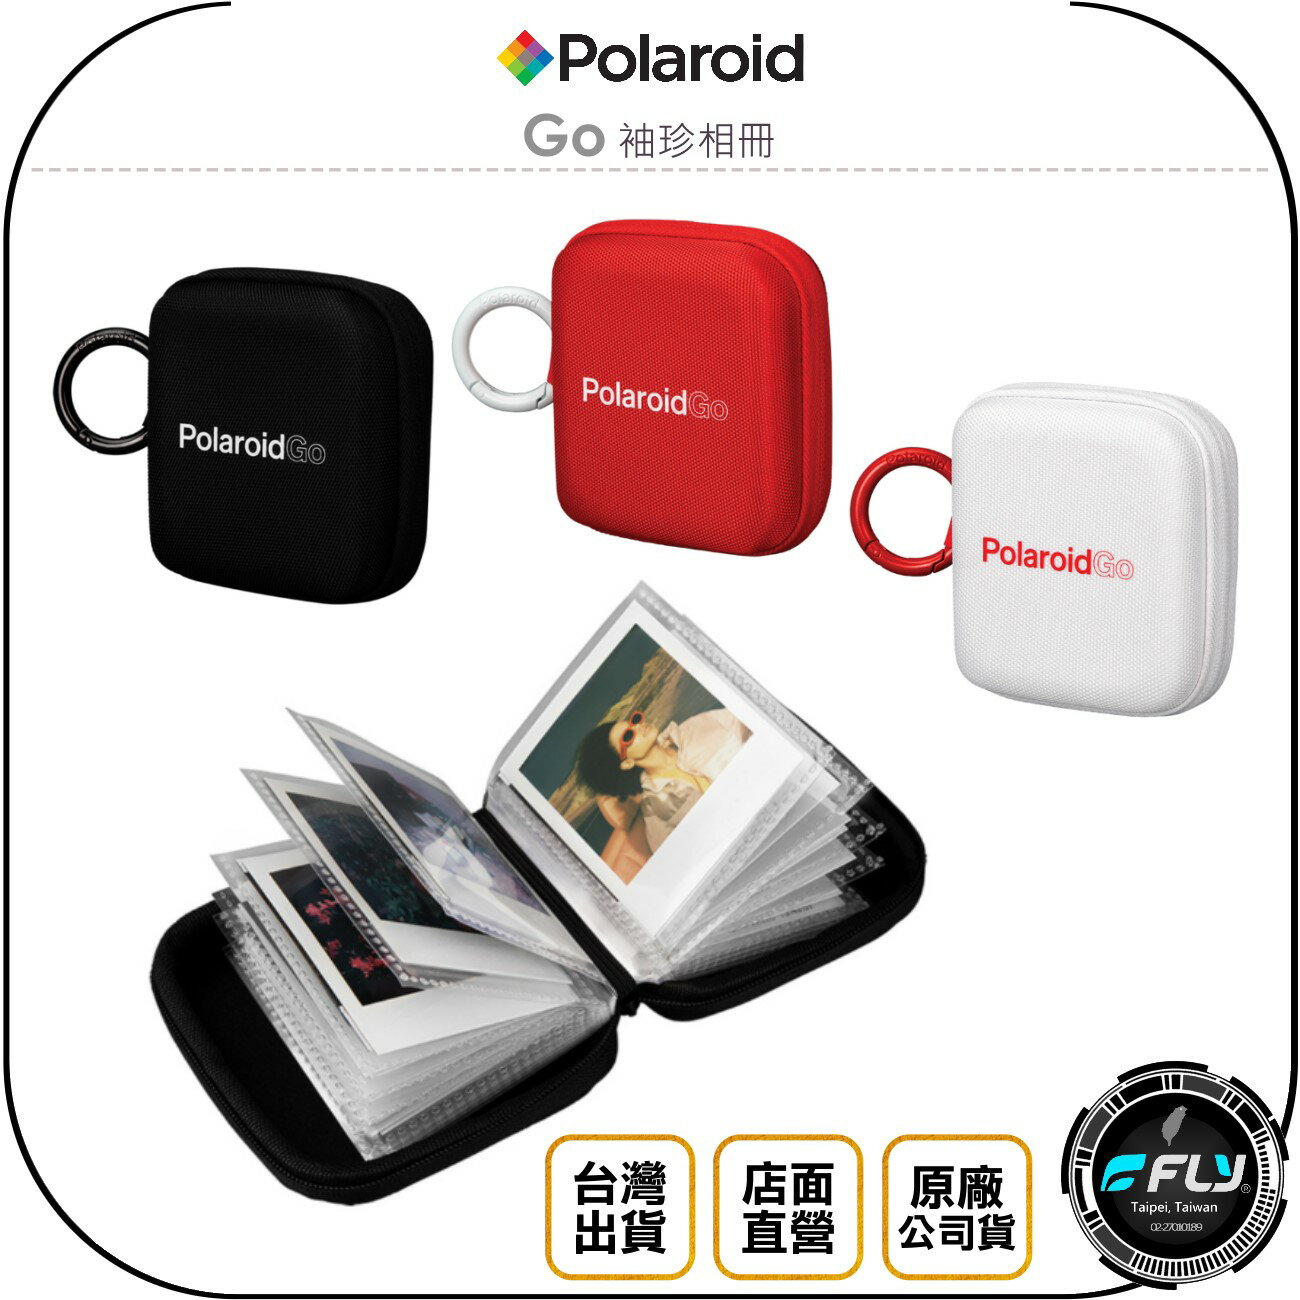 《飛翔無線3C》Polaroid 寶麗來 Go 袖珍相冊◉公司貨◉適用 GO 相機相片◉可攜式相本